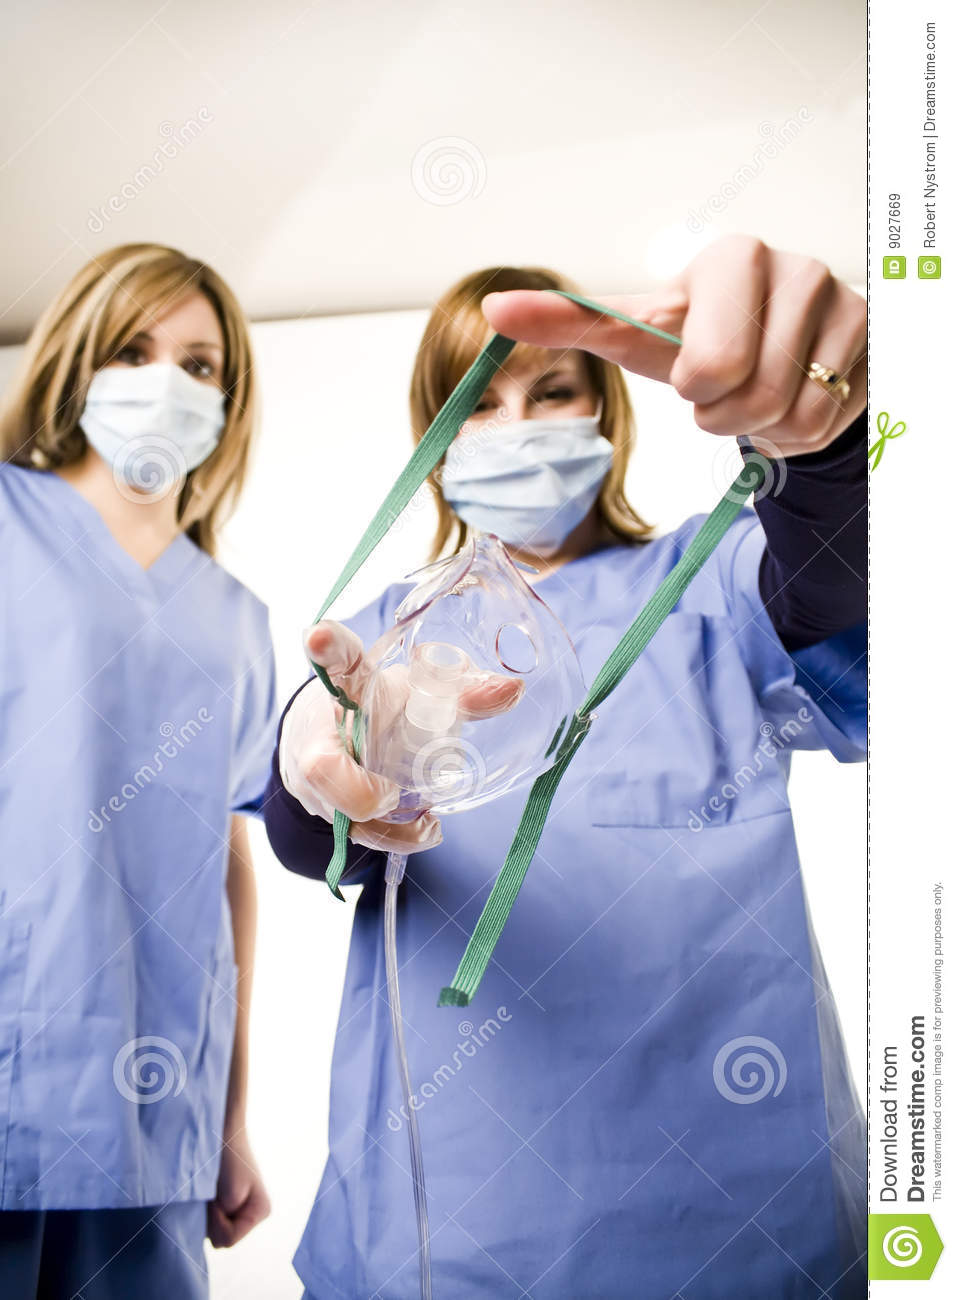 Nurse Holding Anesthesia Mask Royalty Free Stock Images   Image